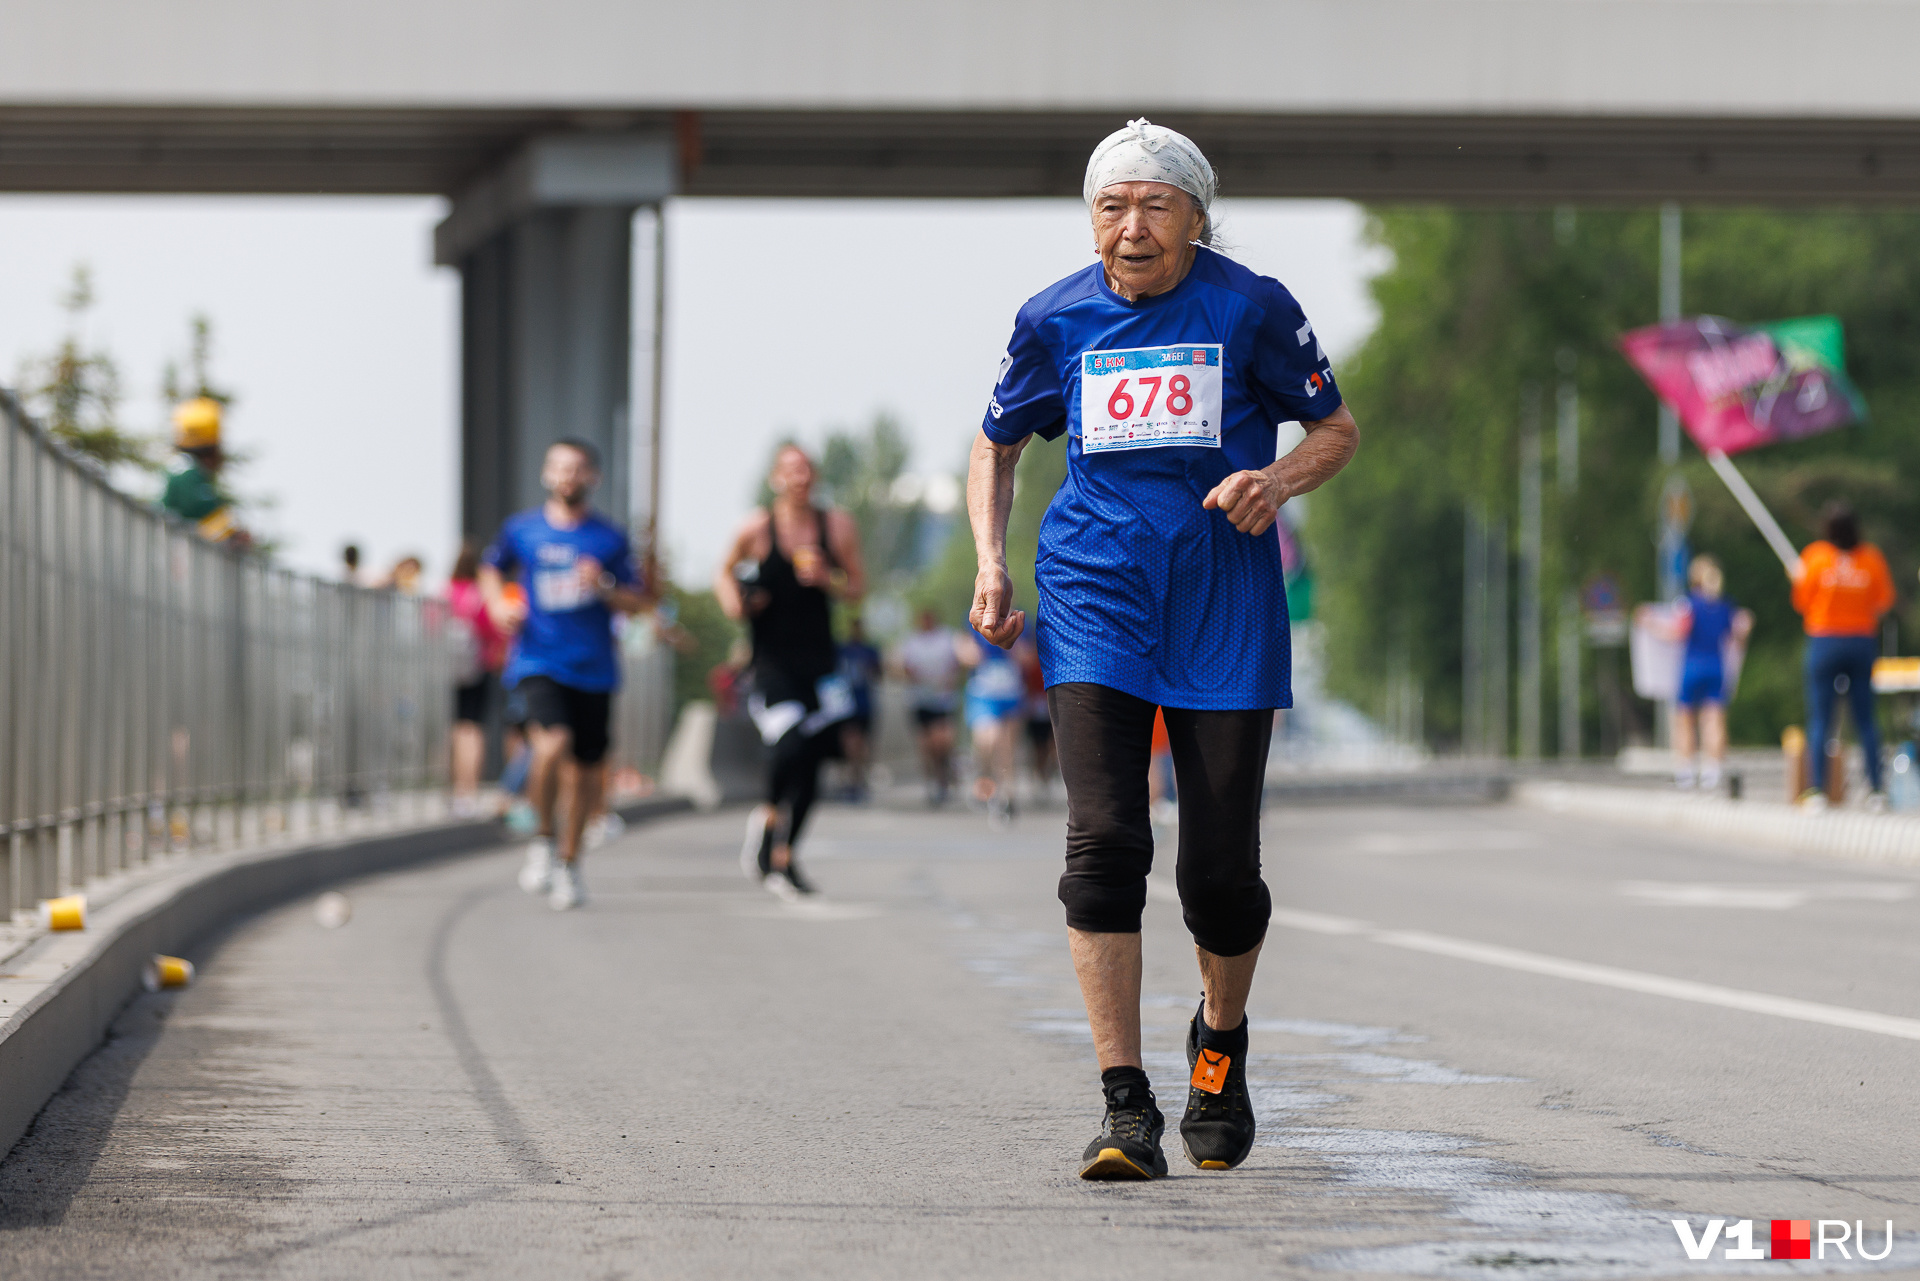 Как нужно верить в себя и свои силы, показывает на личном примере <nobr class="_">87-летняя</nobr> участница марафонов и забегов Ханифа Рахимкулова. В воскресенье она пробежала дистанцию в 5 километров